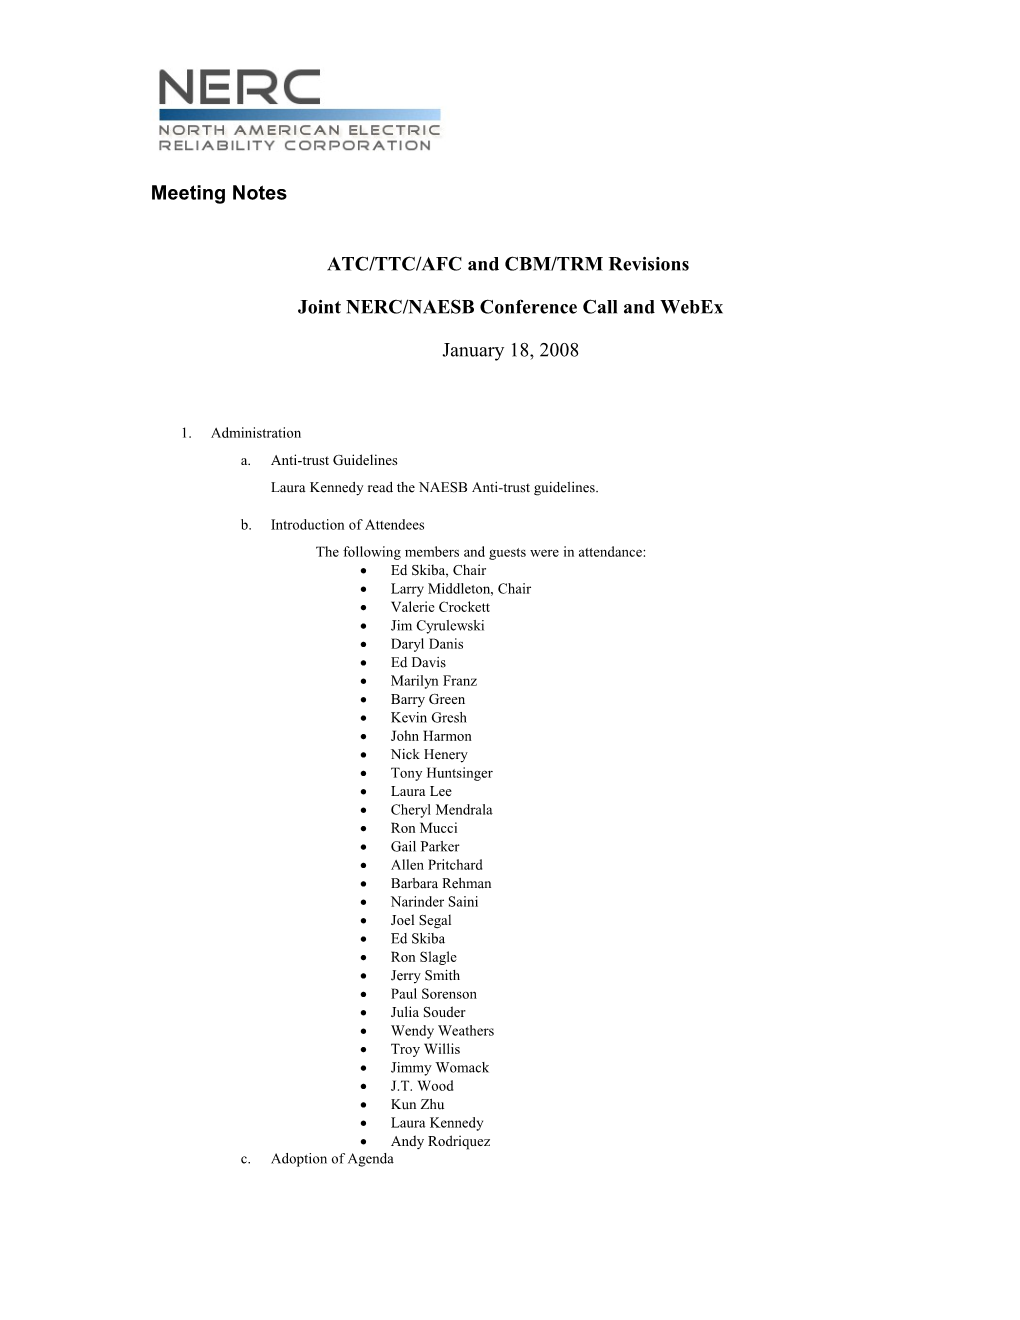 ATC/TTC/AFC and CBM/TRM Revisions